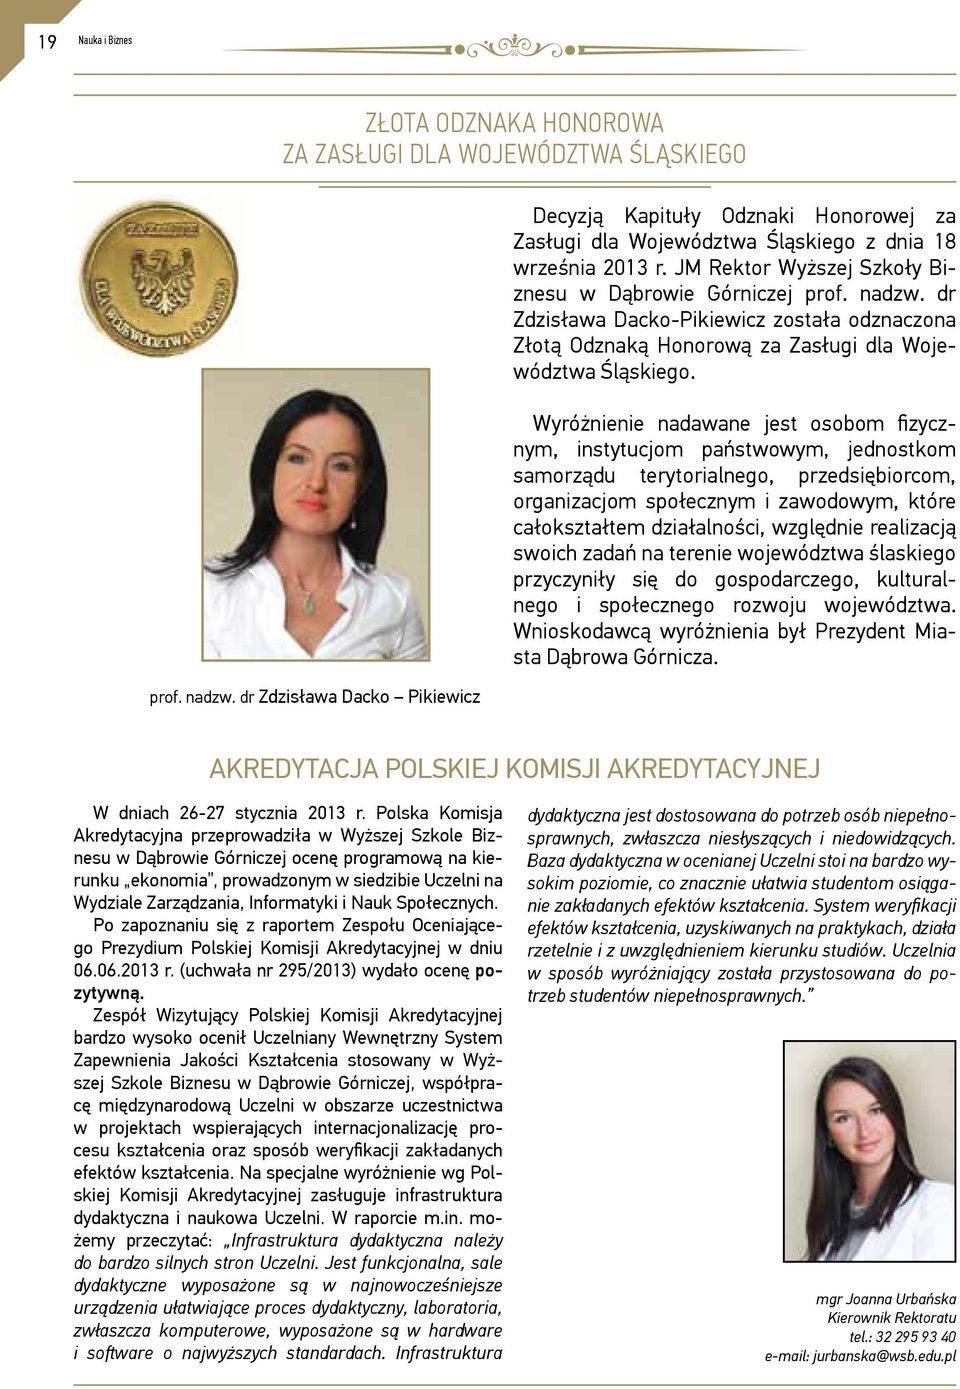 dr Zdzisława Dacko-Pikiewicz została odznaczona Złotą Odznaką Honorową za Zasługi dla Województwa Śląskiego.